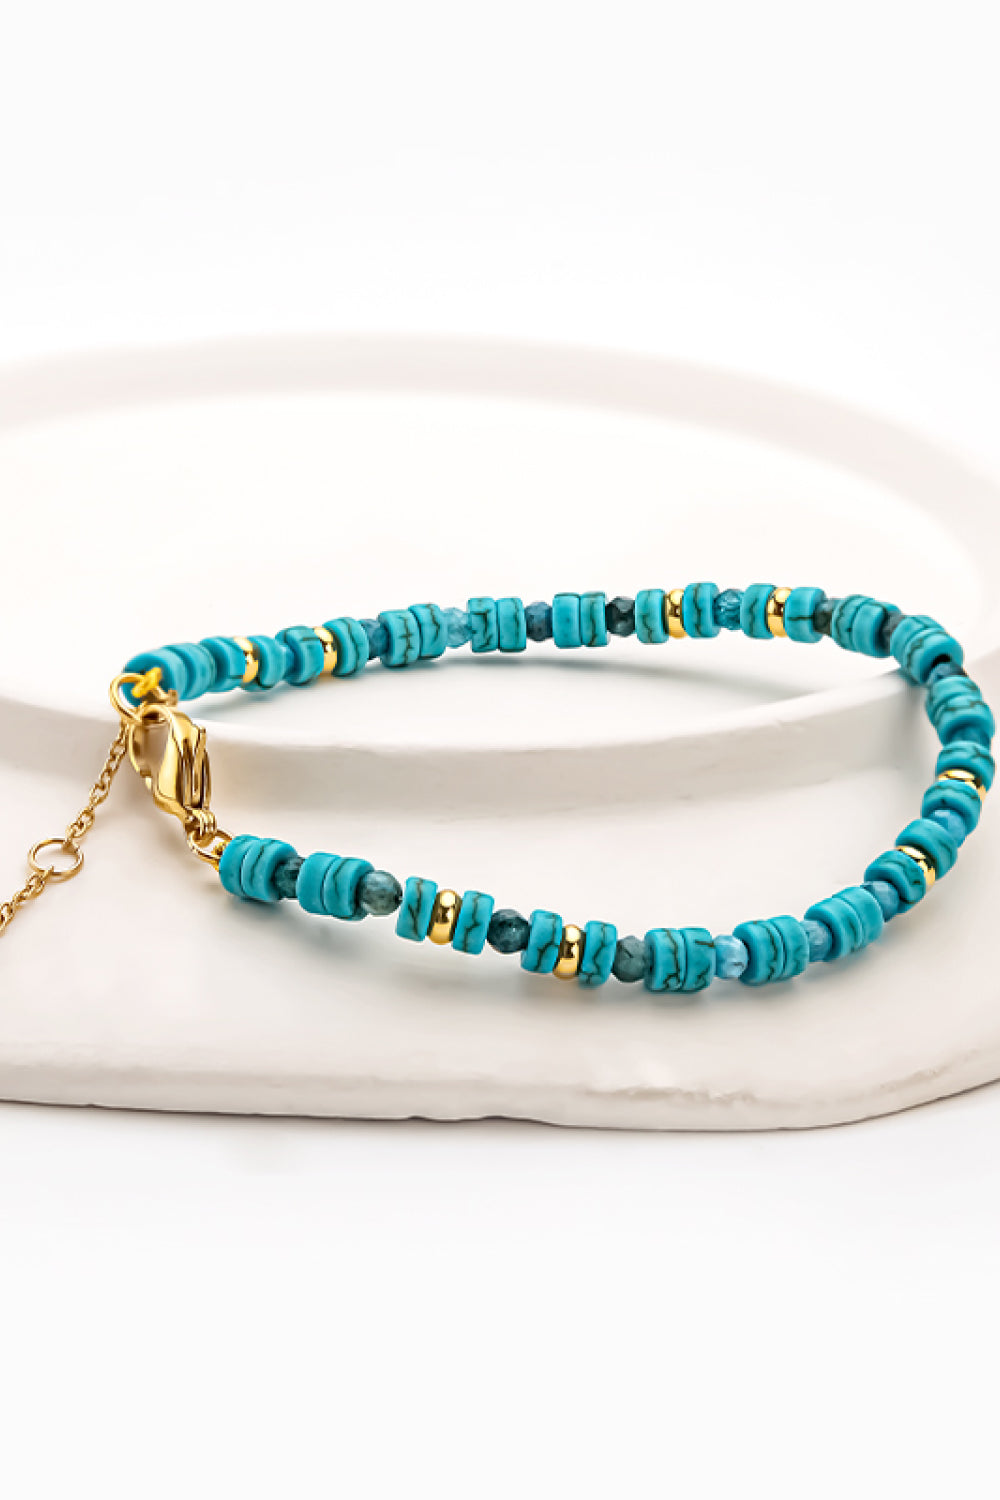 Turquoise Copper Bracelet - Green / One Size - Women’s Jewelry - Bracelets - 2 - 2024